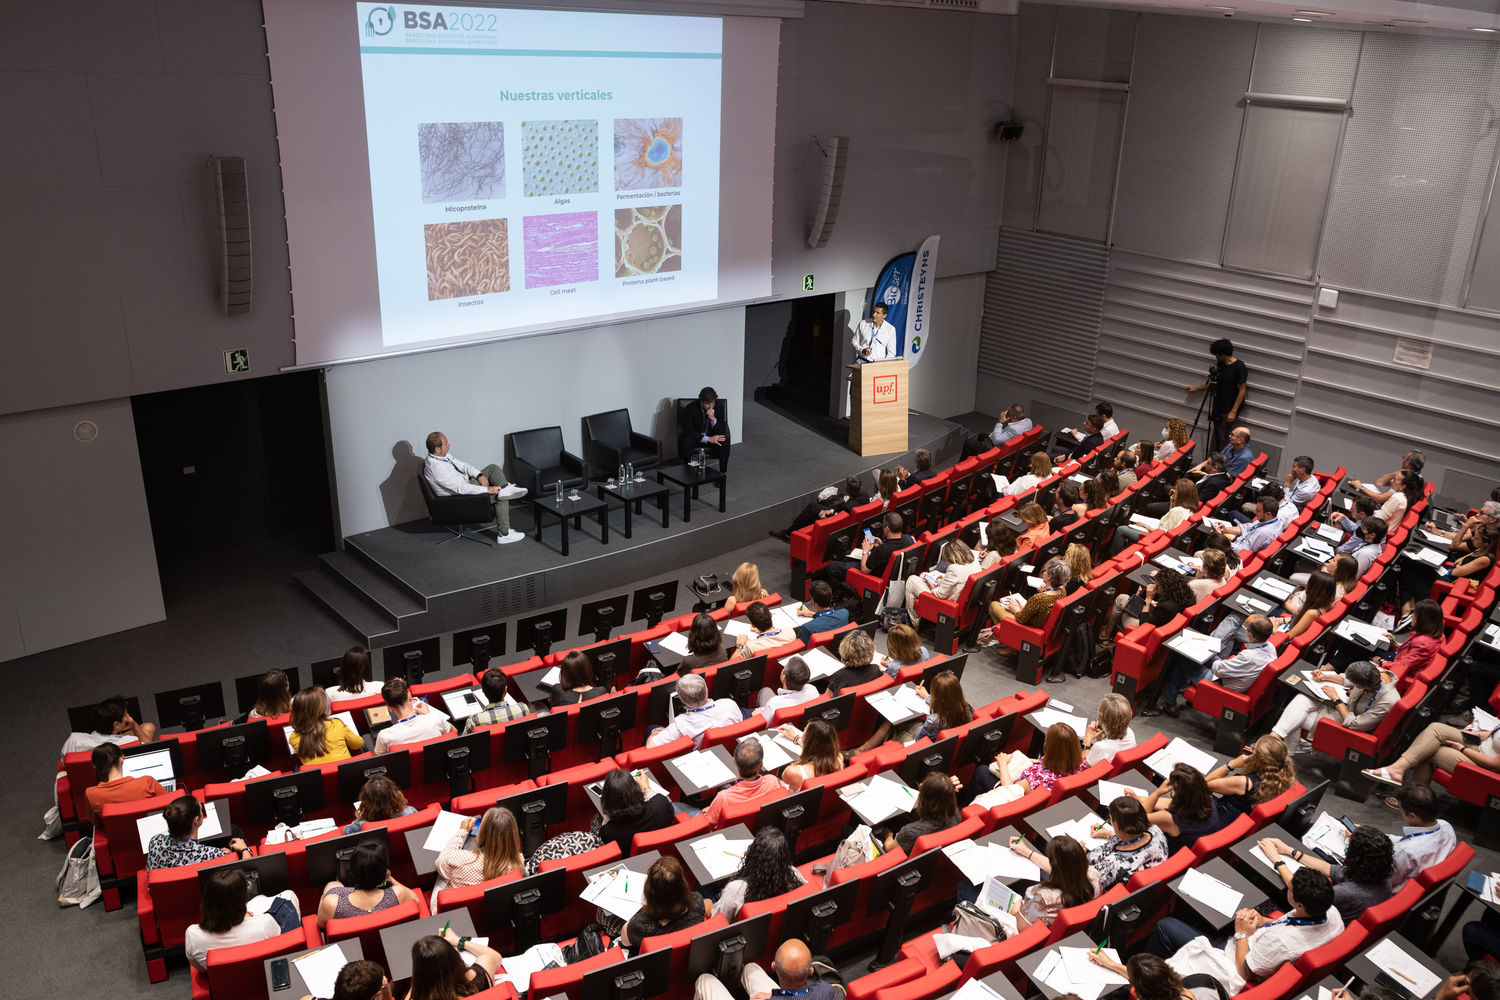 Resumen cuarta edición del Fórum BSA 2022: Fuentes de proteína a debate